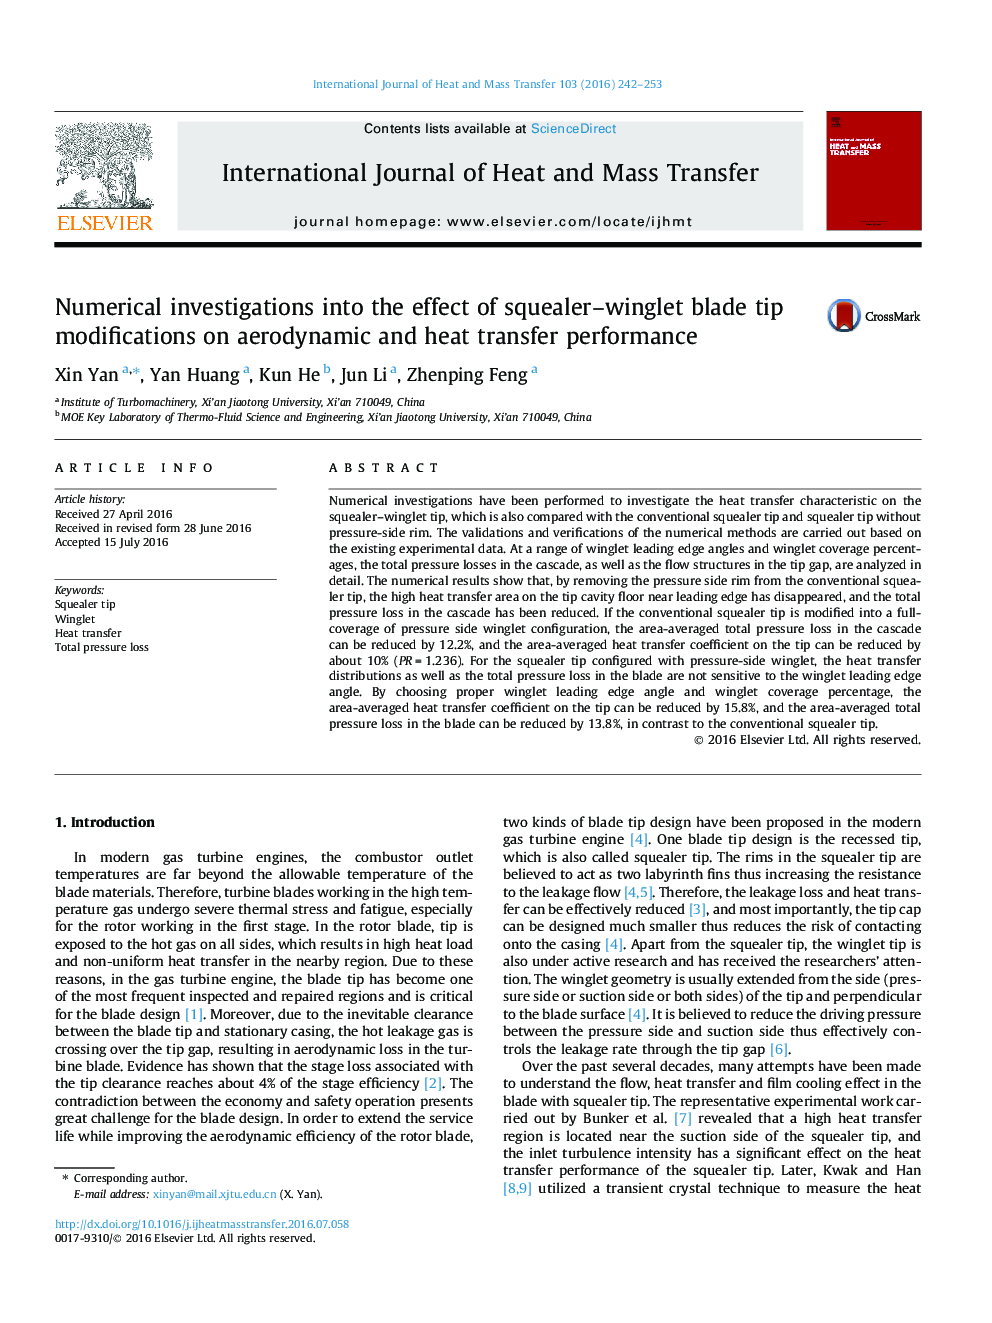 تحقیقات عددی در مورد تاثیر اصلاح نوک تیغه پیچک بر روی عملکرد آیرودینامیکی و انتقال حرارت 